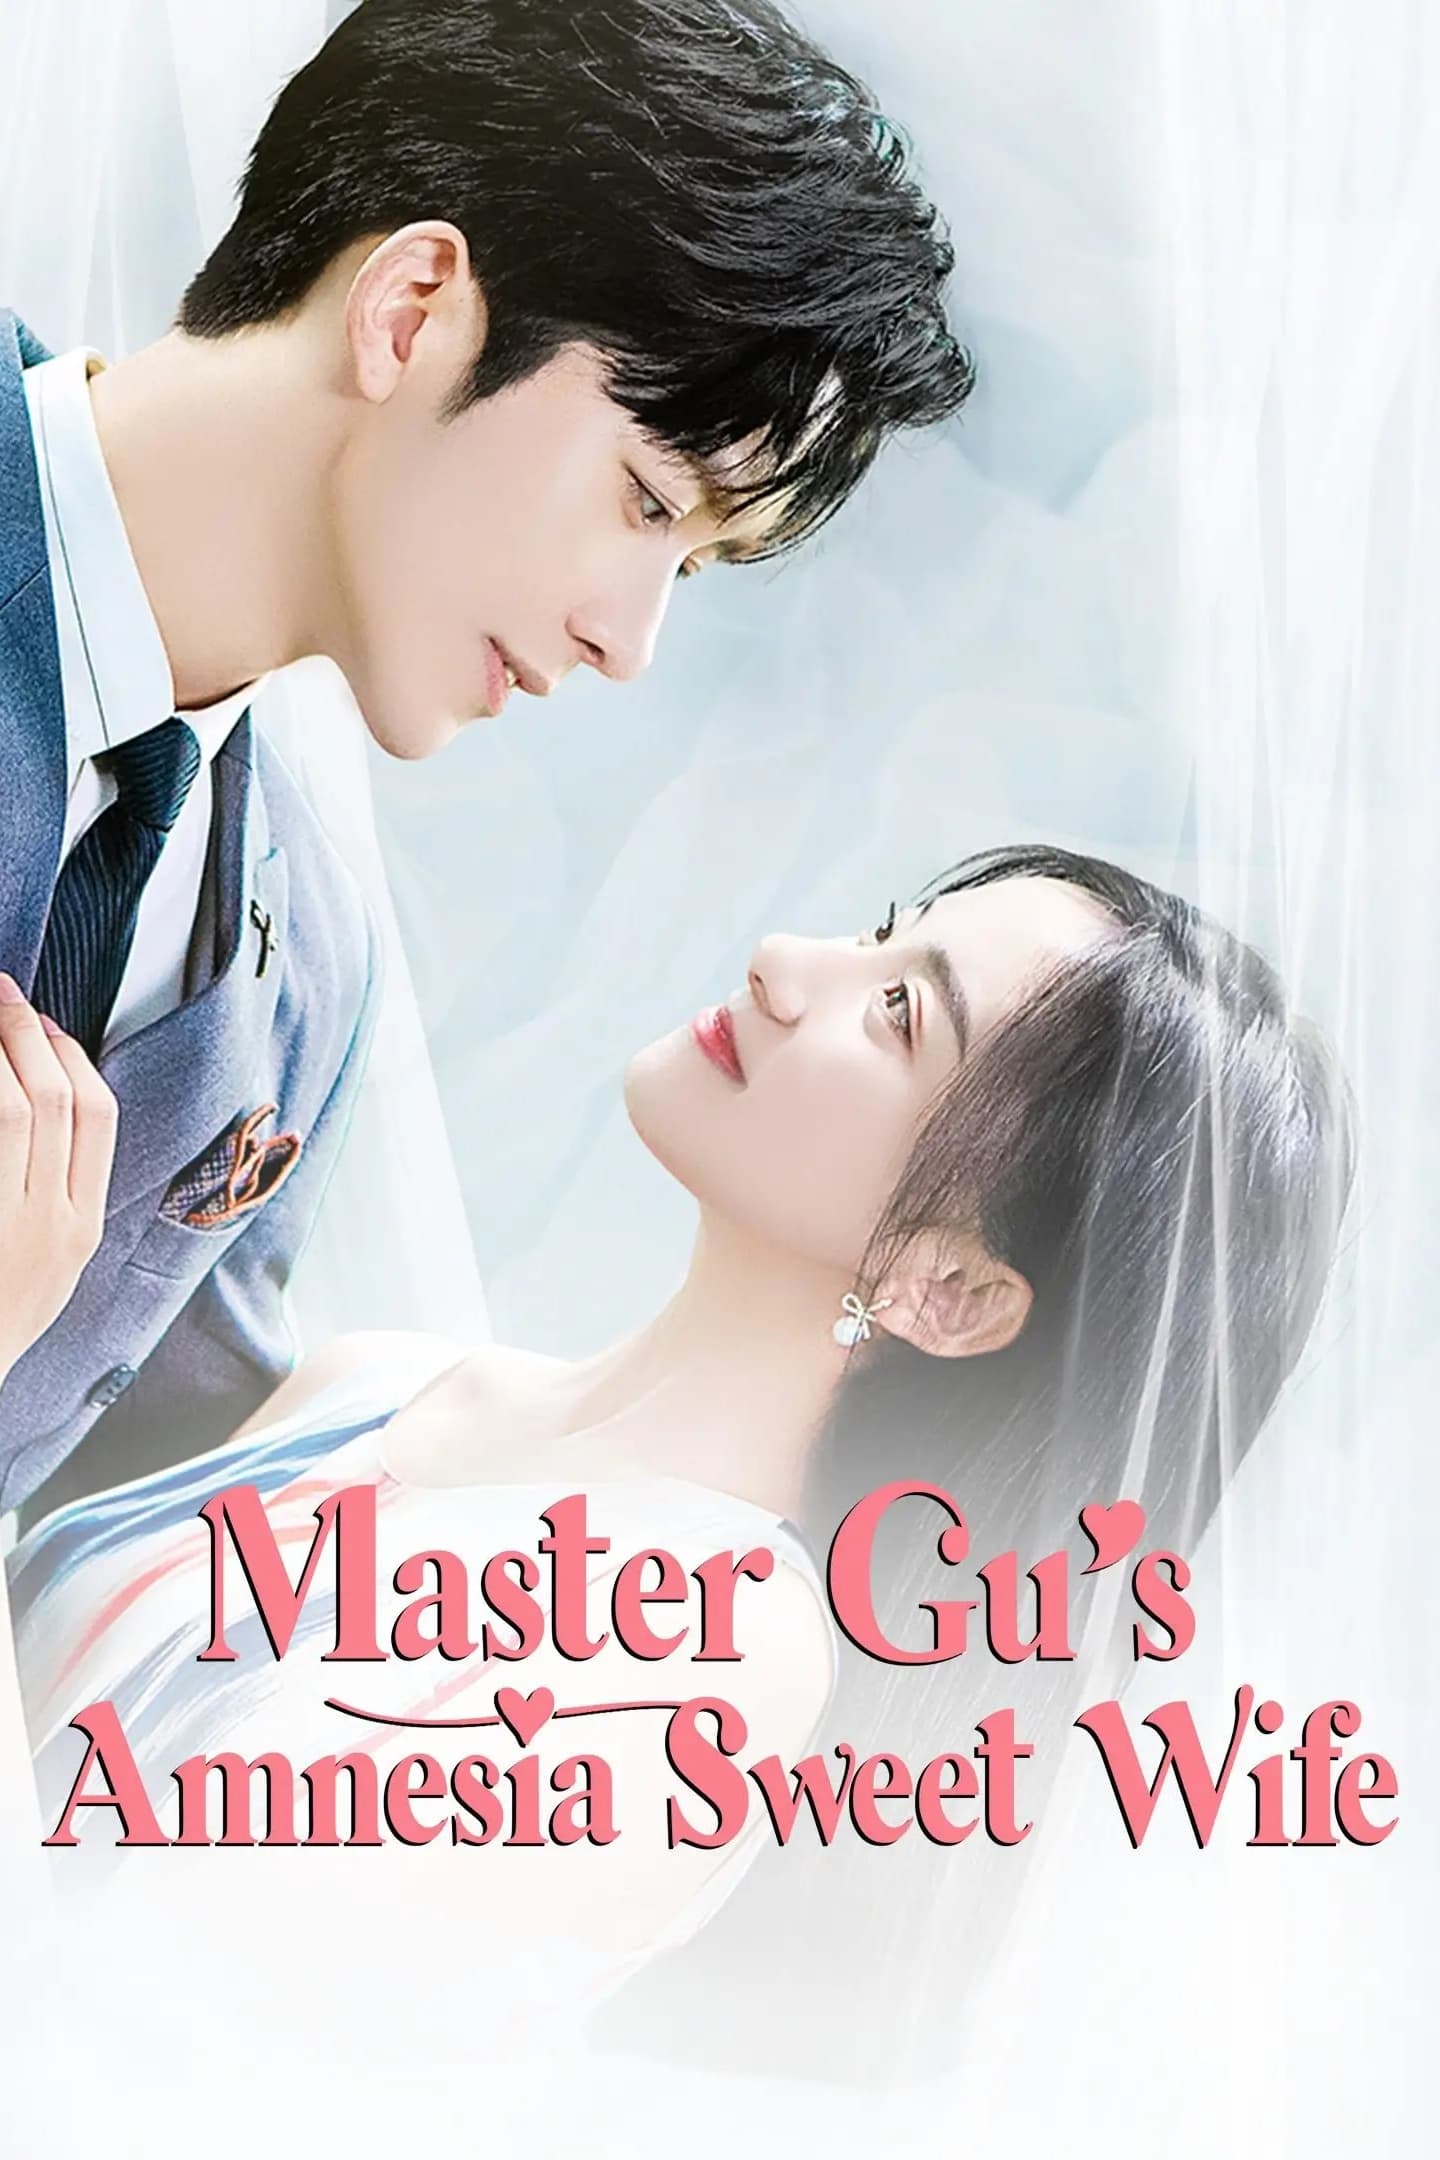 Master Gu’s Amnesia Sweet Wife